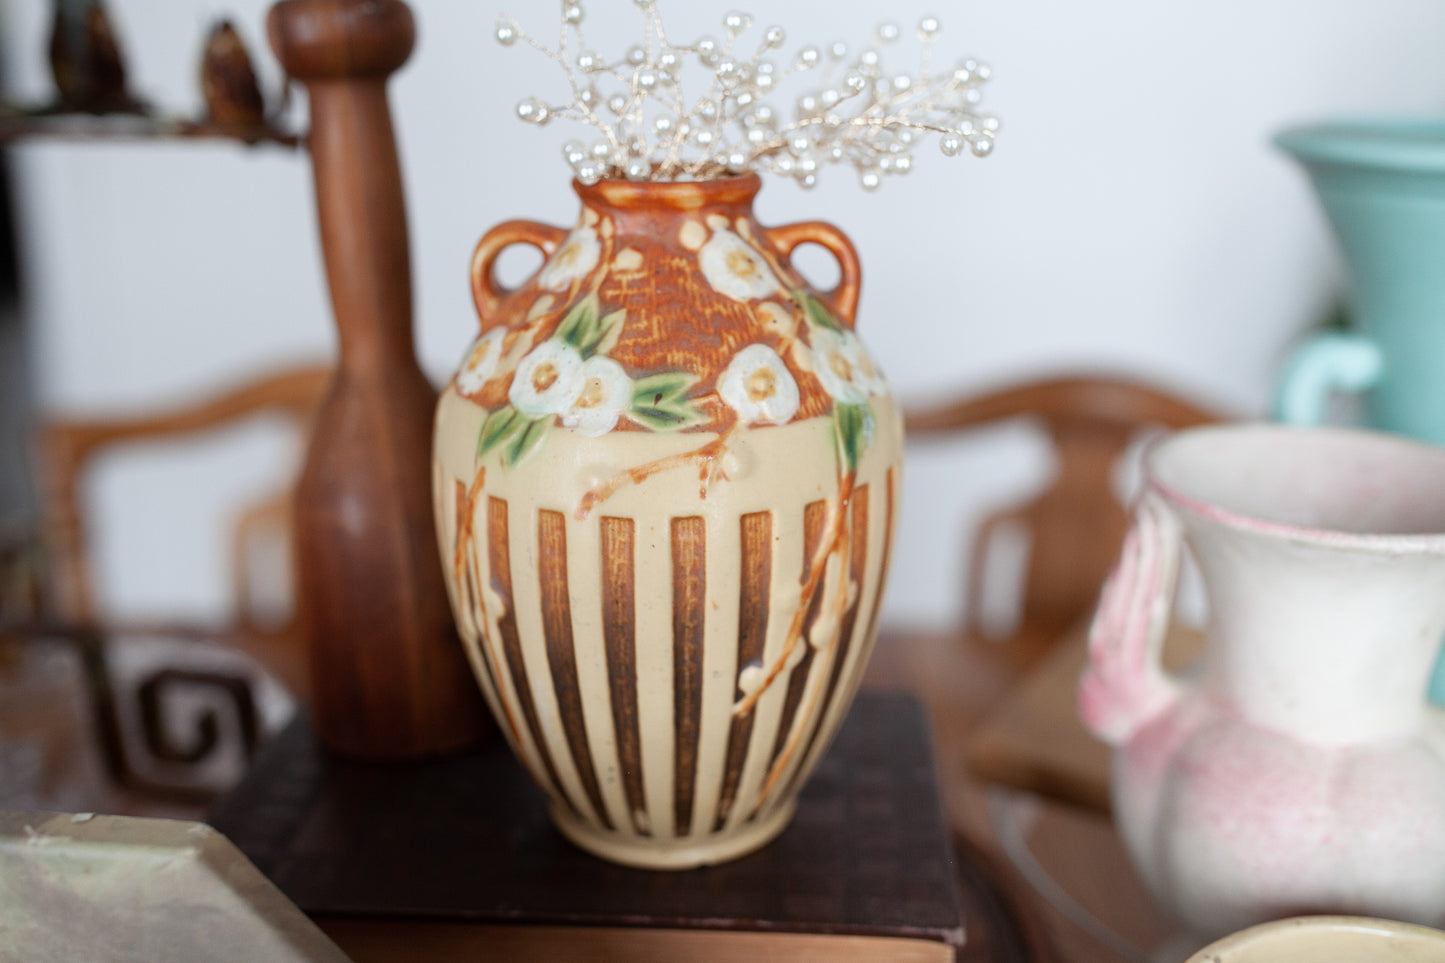 Roseville Pottery Cherry Blossom Vase, Shape 622-7, Brown